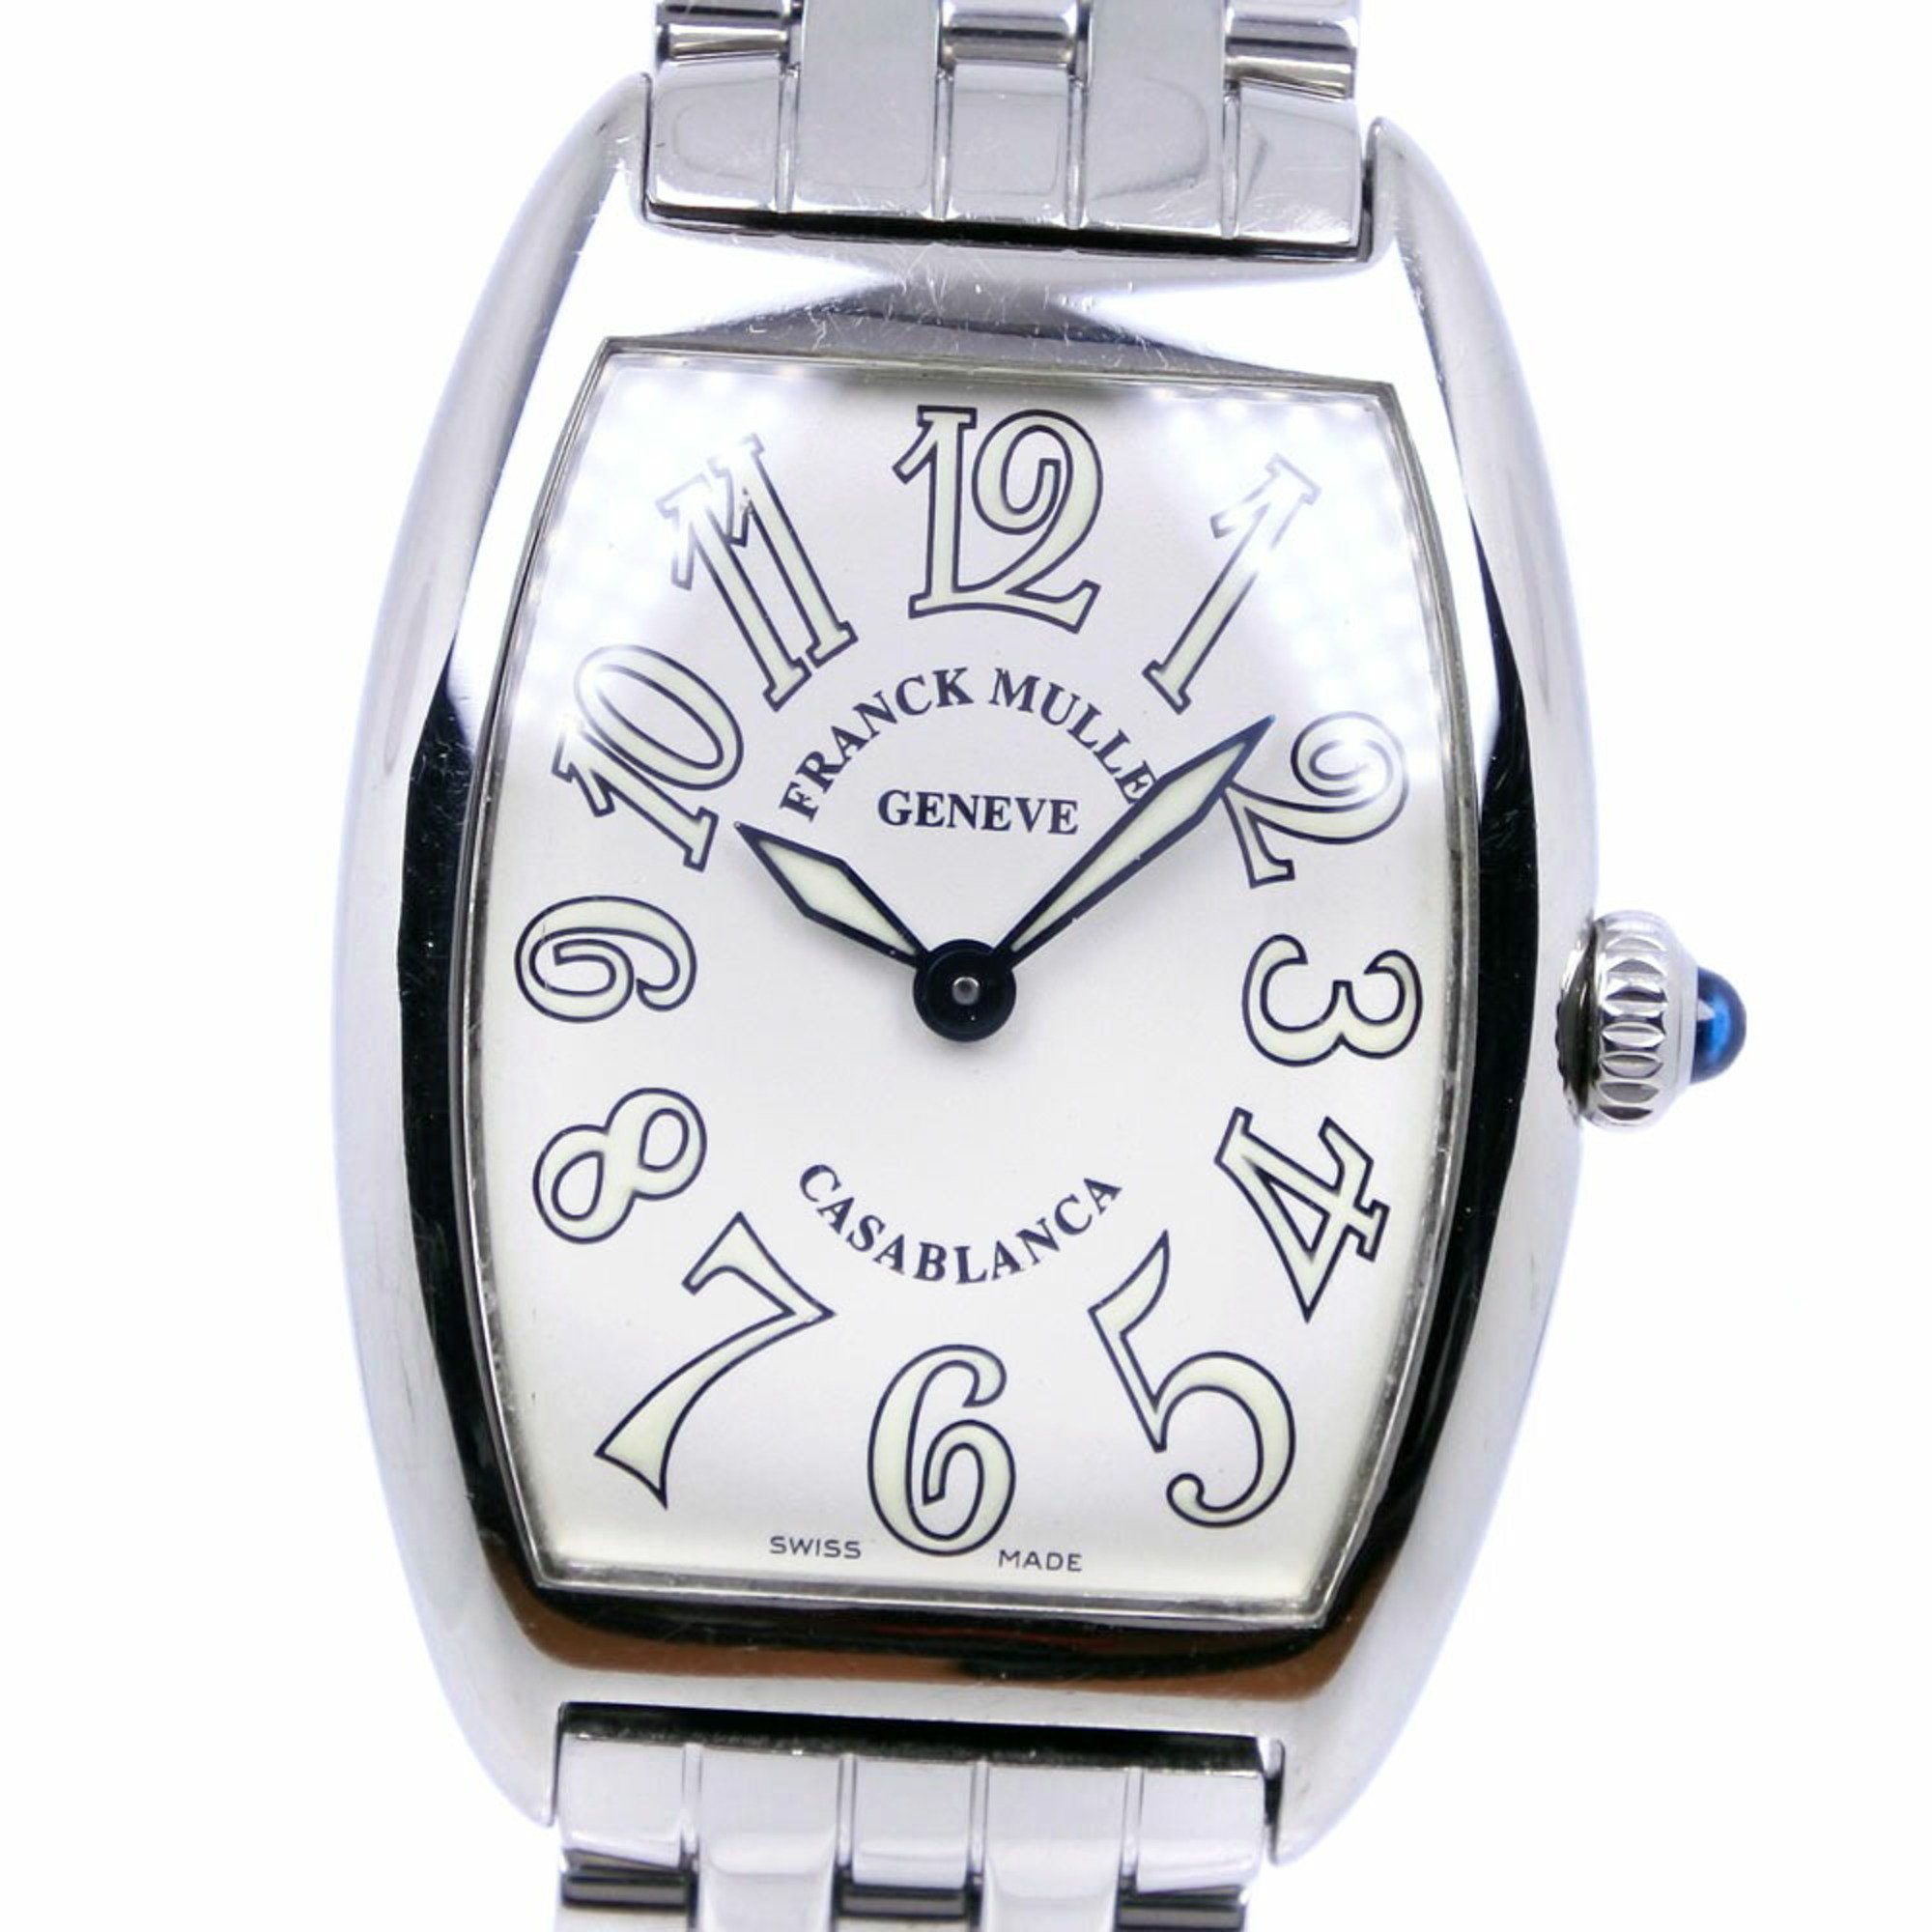 FRANCK MULLER Franck Muller Casablanca 1752QZ stainless steel quartz analog display ladies white dial watch